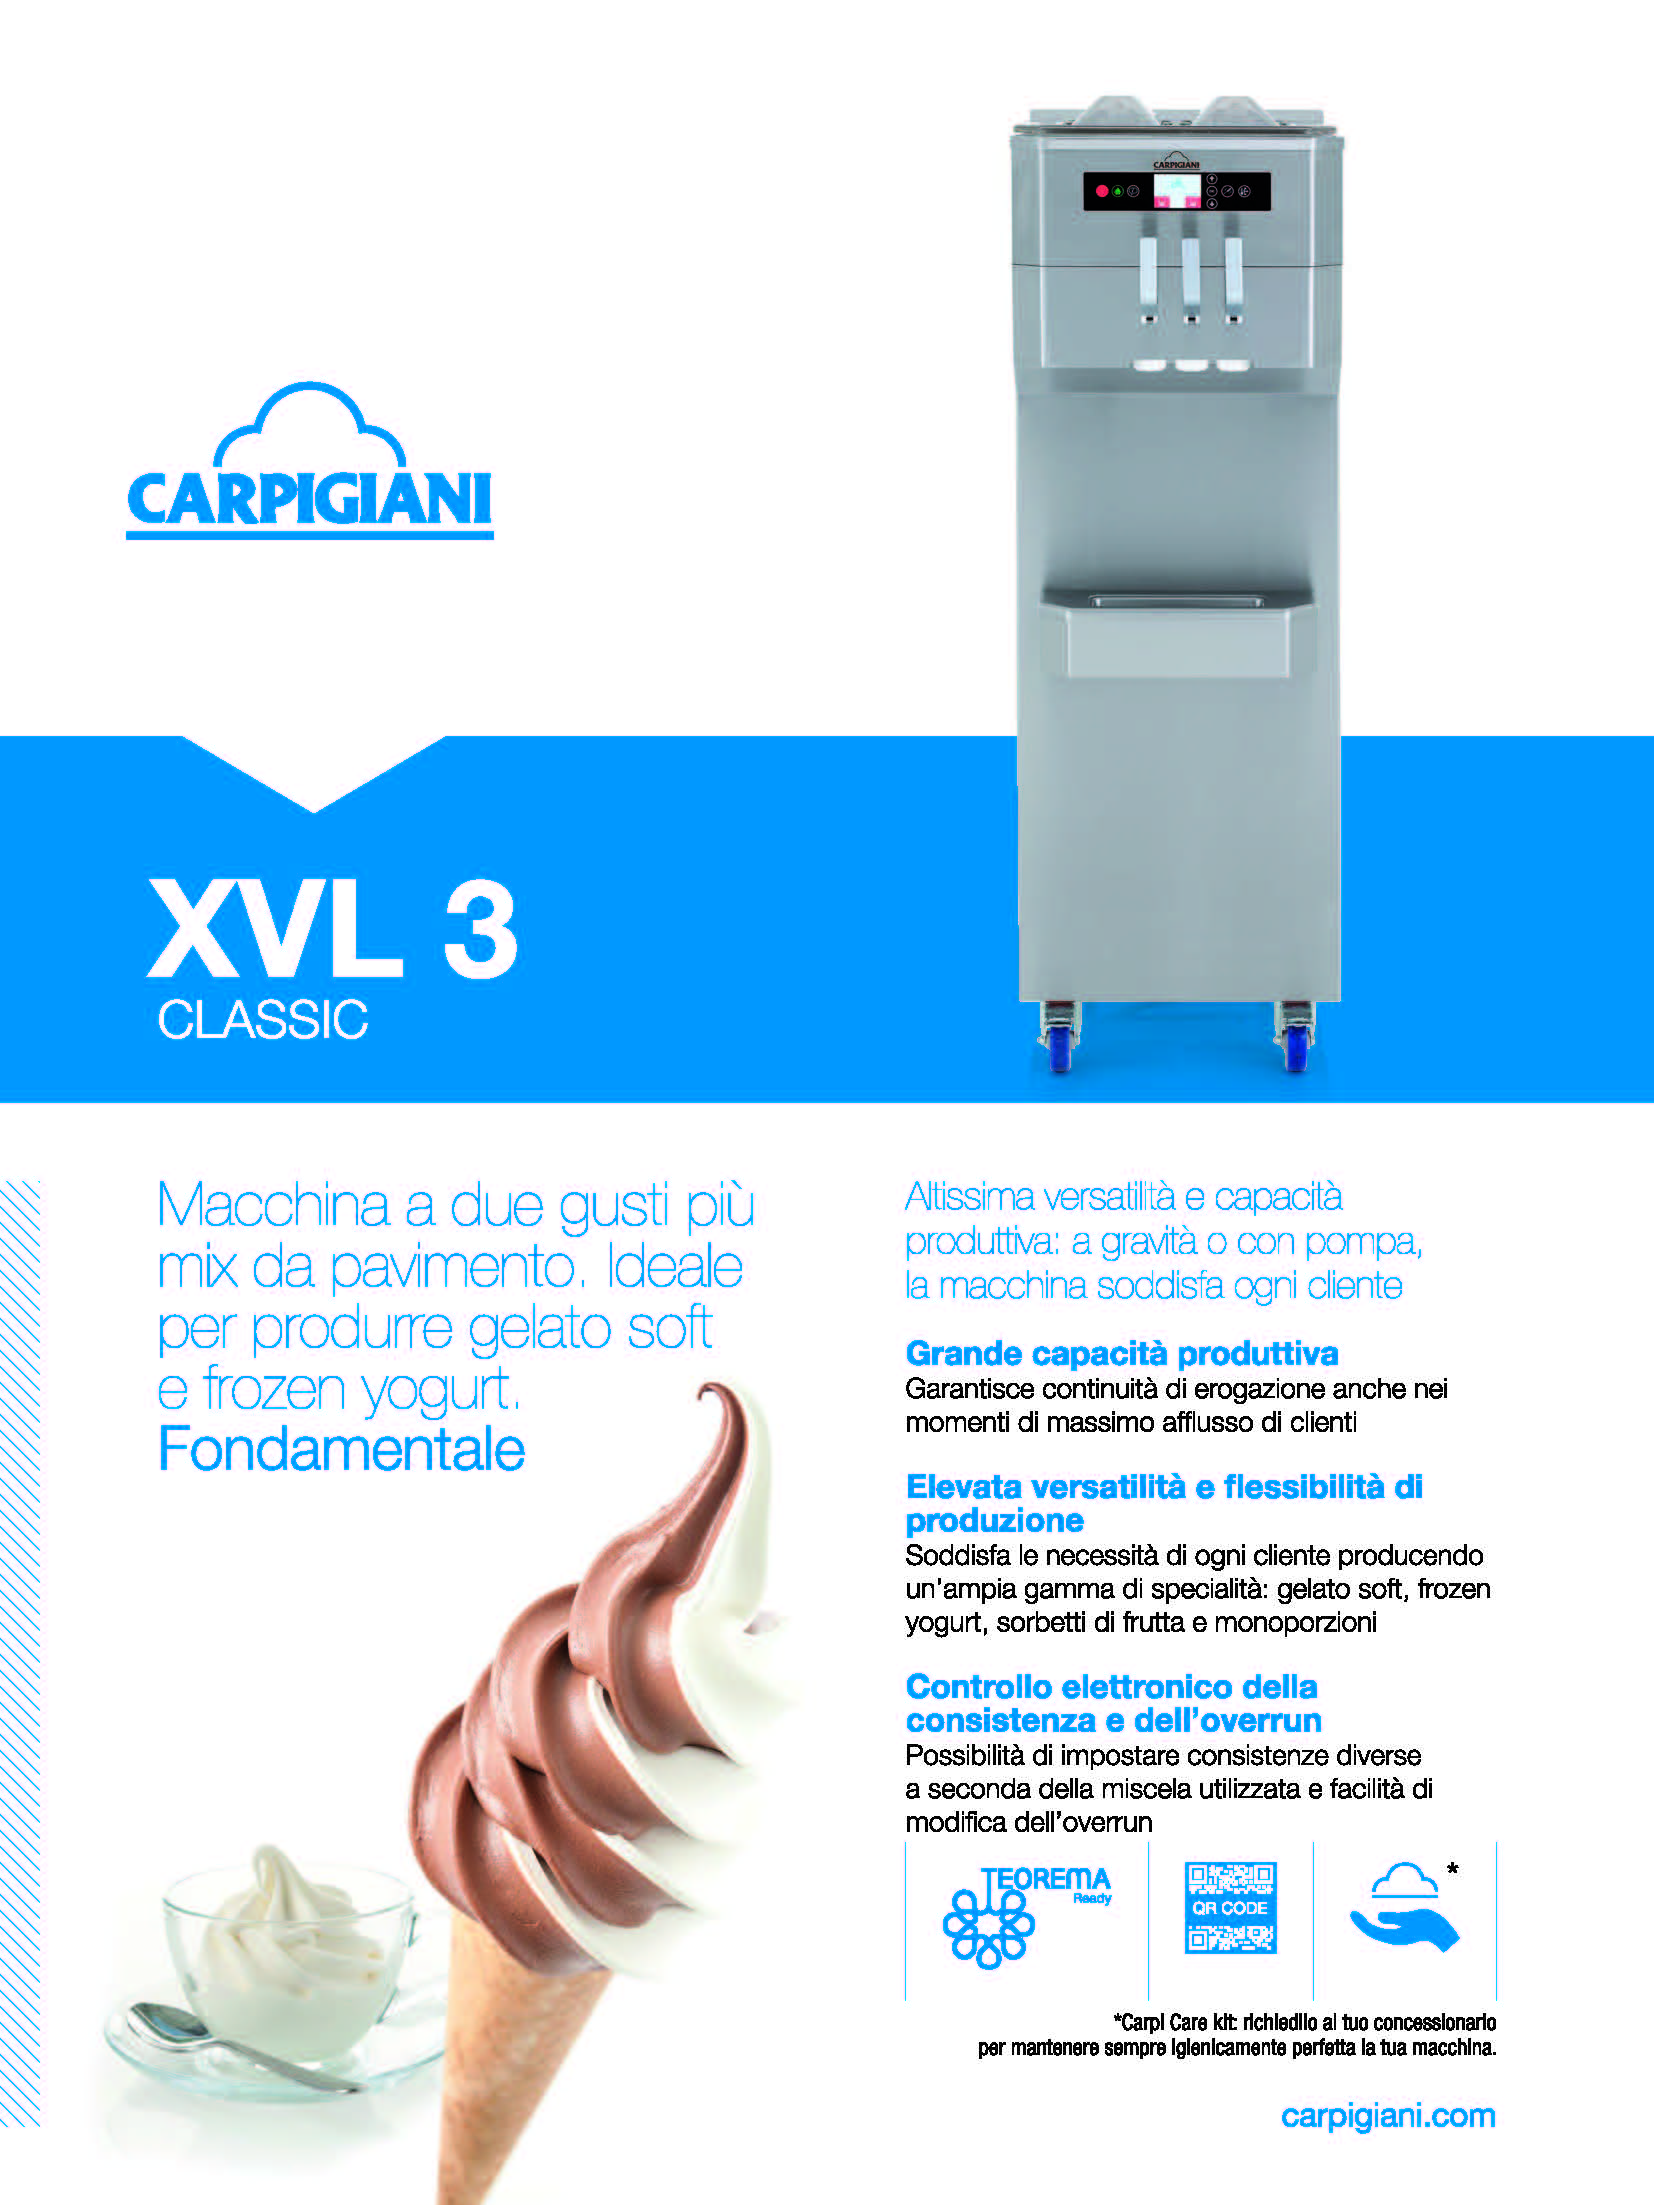 Carpigiani – XVL 3 CLASSIC